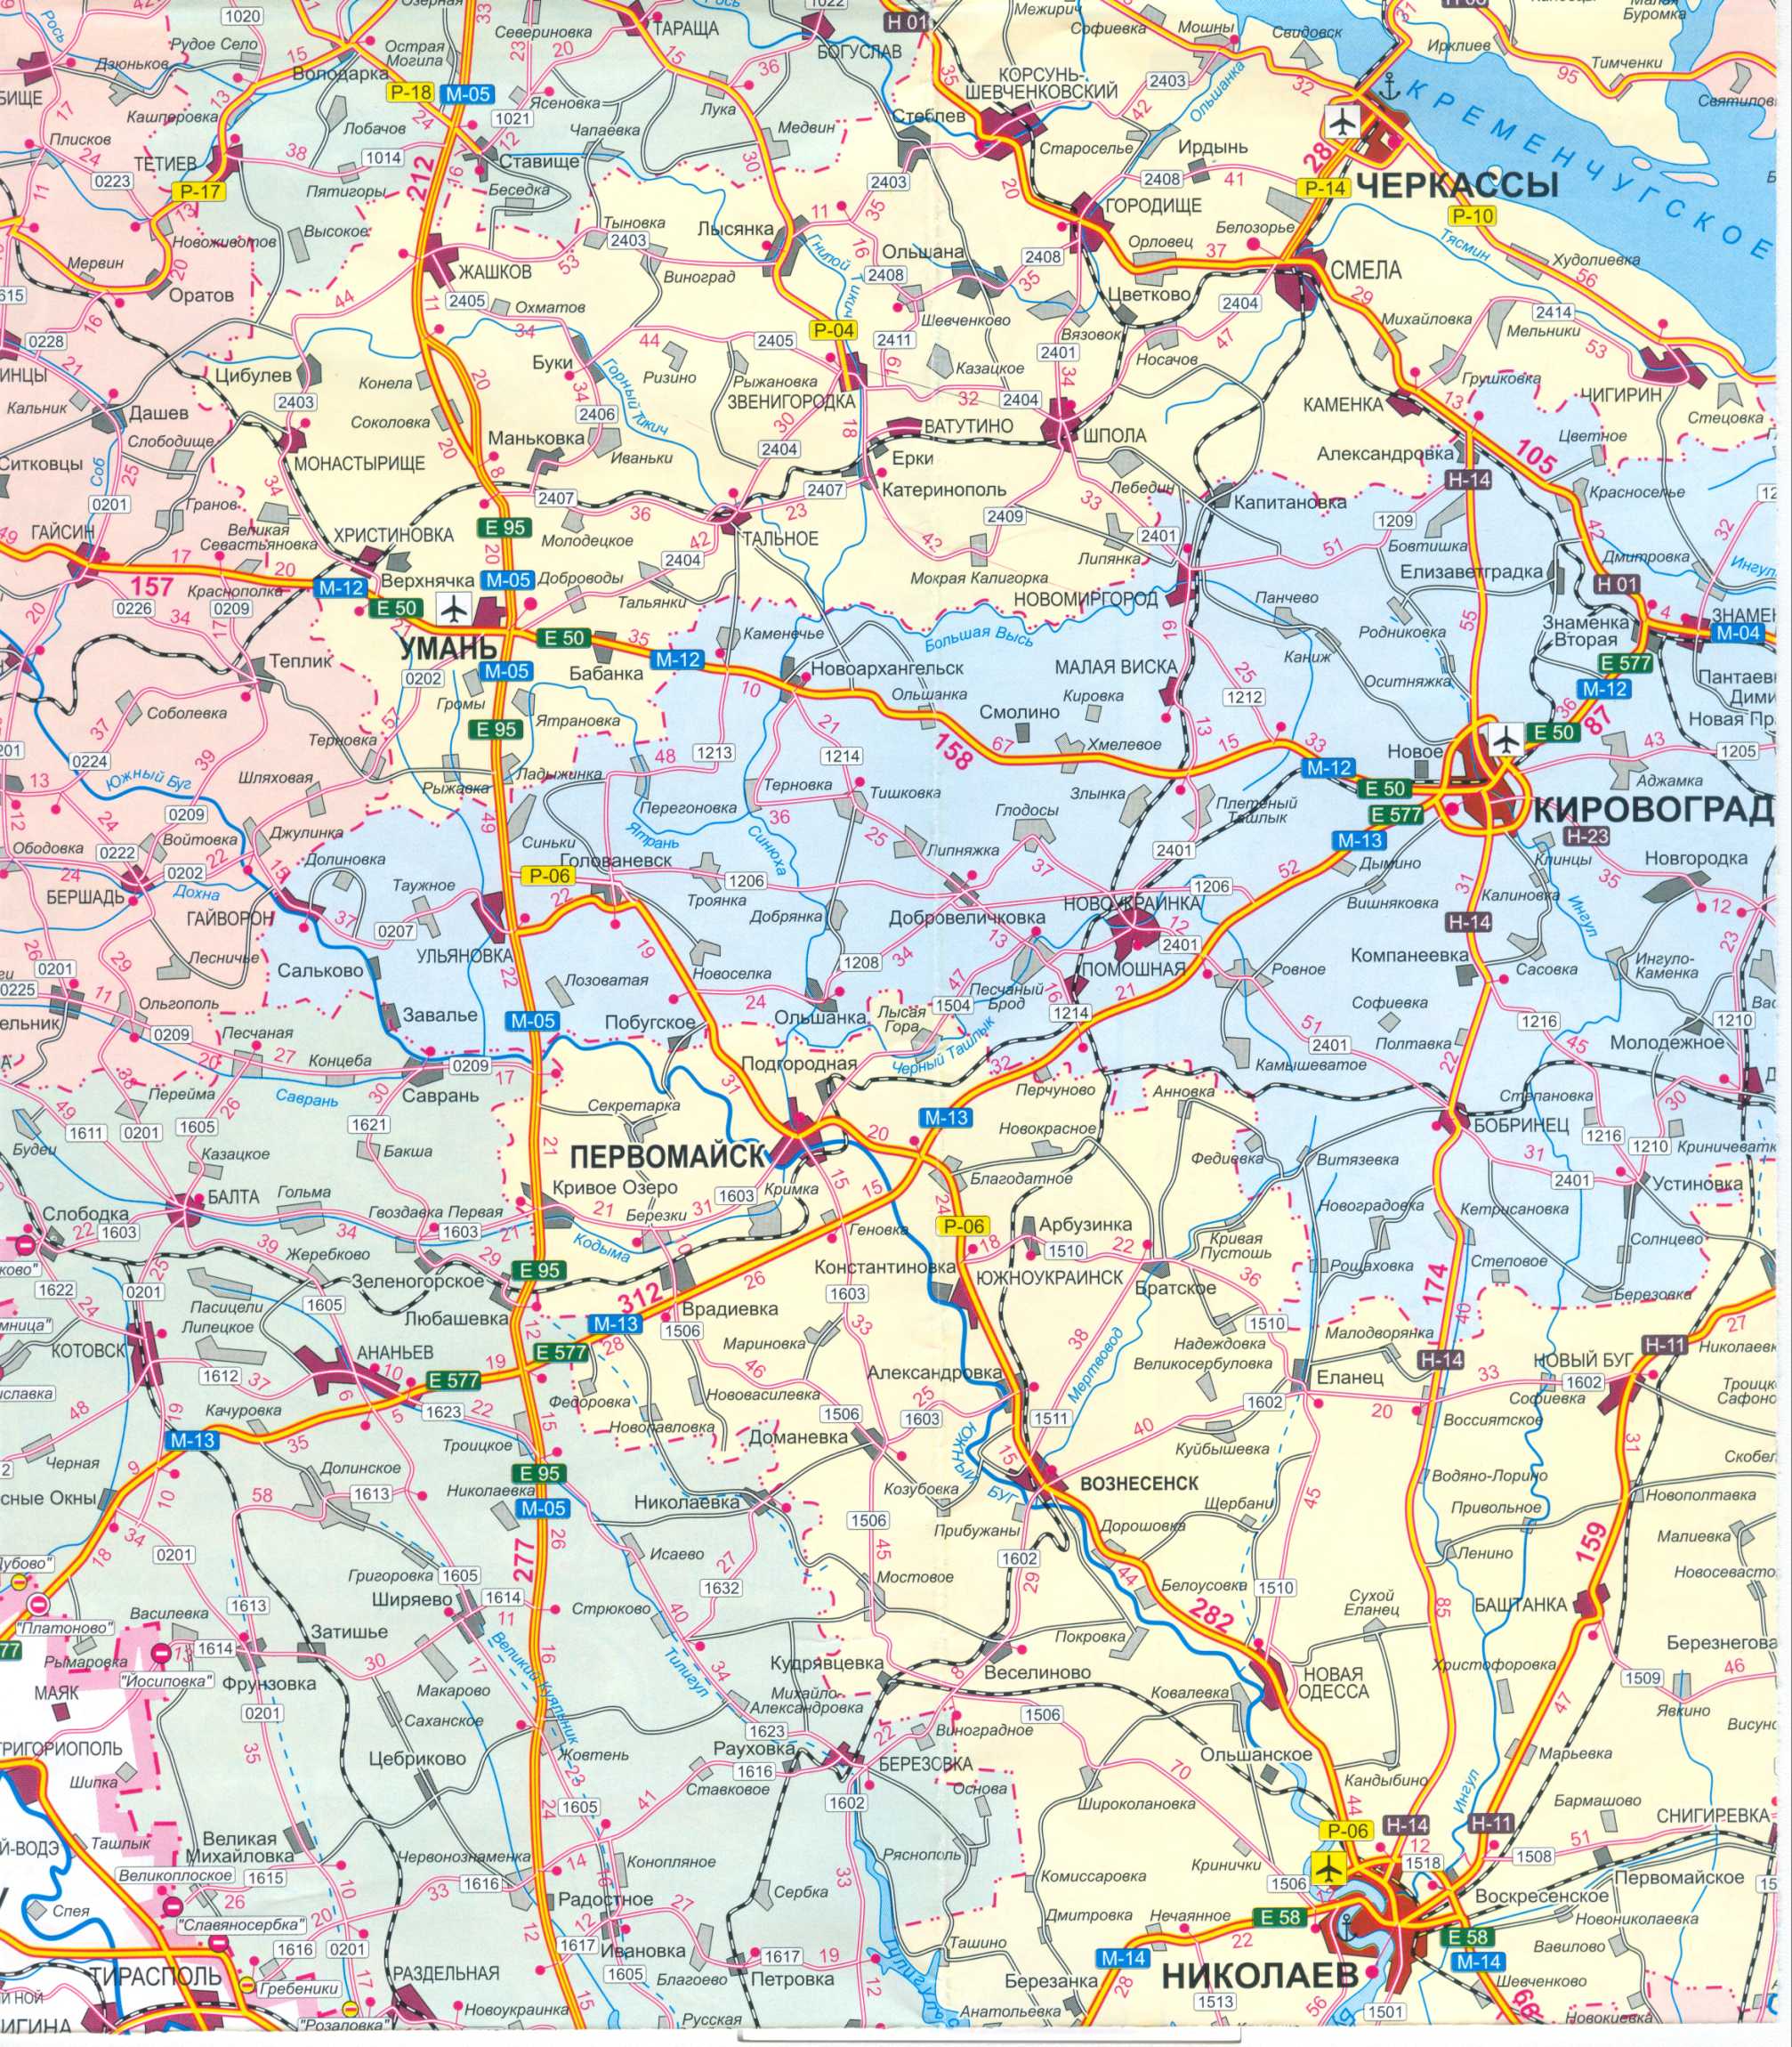 Карта Украины бесплатно. Карта дорог Украины скачать бесплатно. Большая карта дорог Украины бесплатно, C1